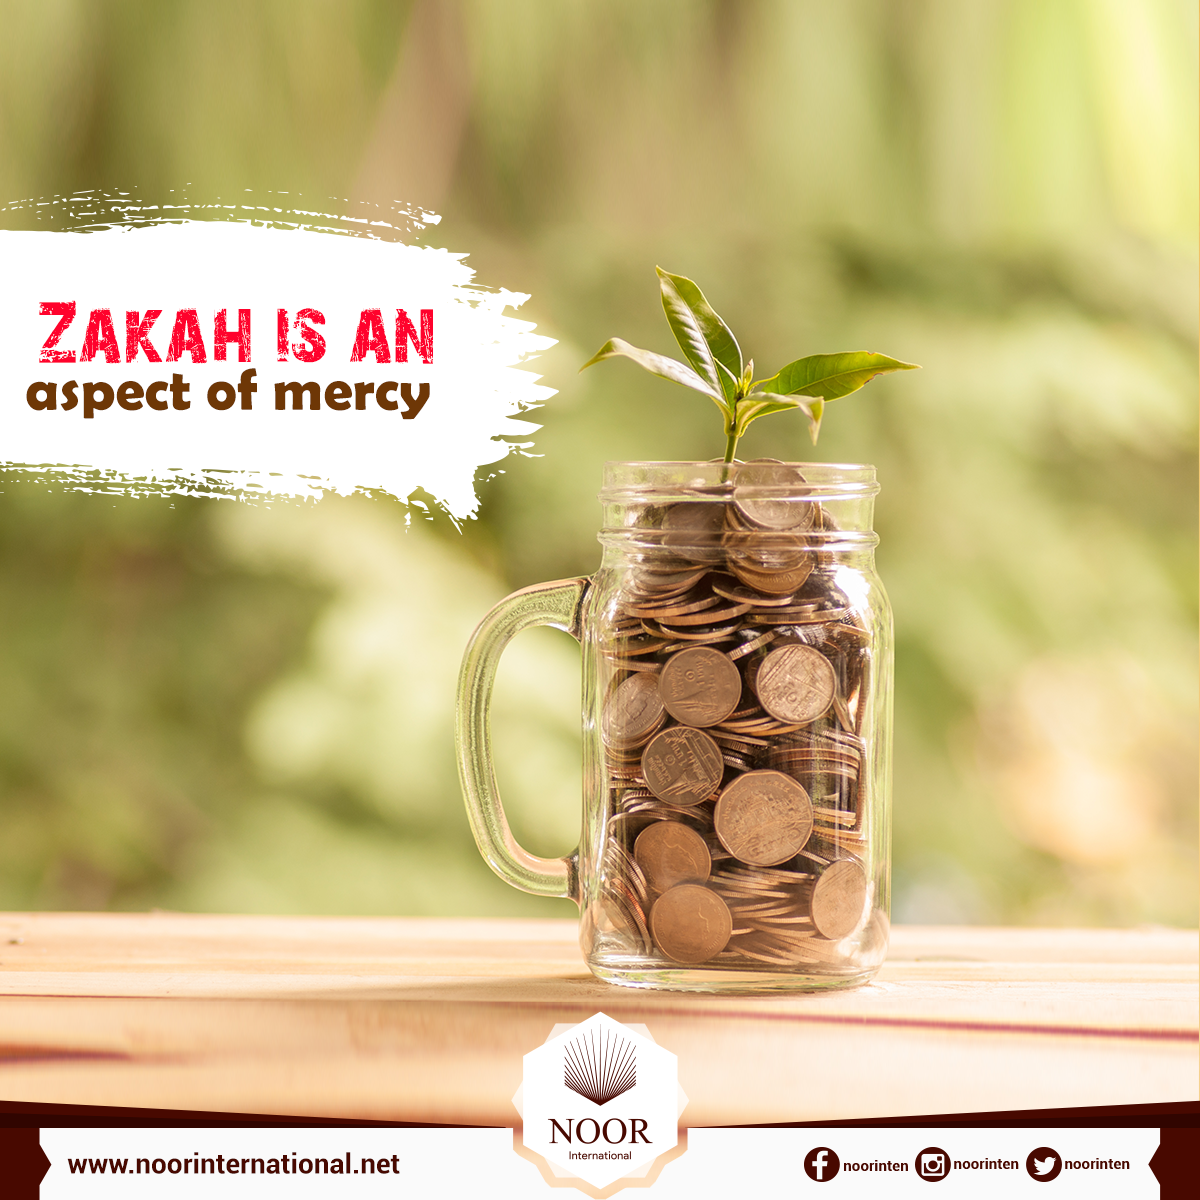 Zakah is an aspect of mercy